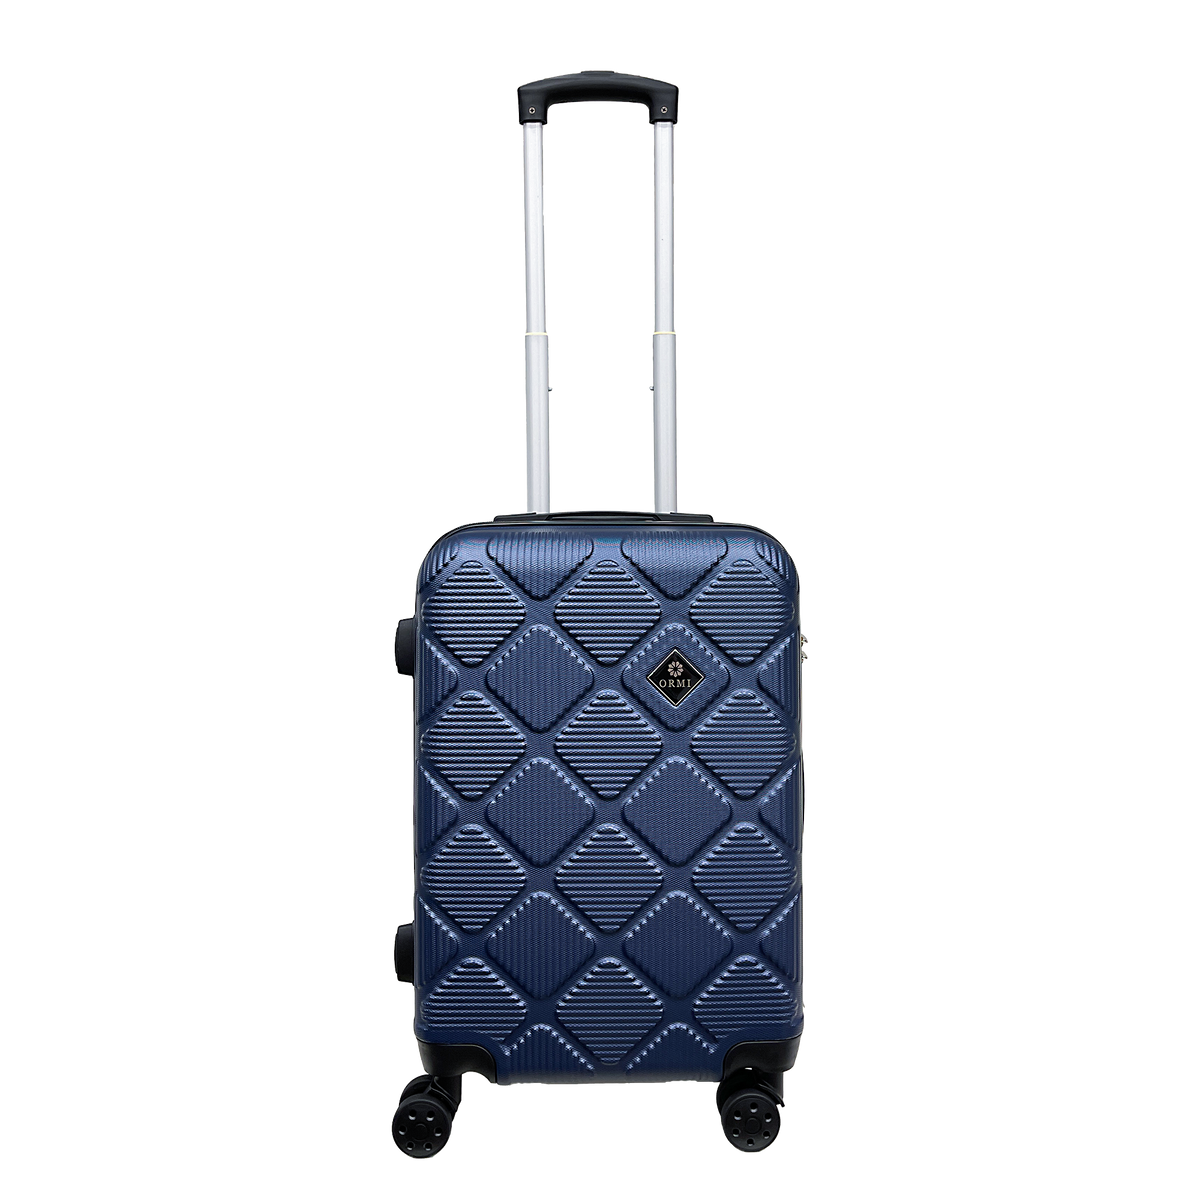 Velika oštra prtljaga kruta prtljaga 55x37x22cm Ultra Light in ABS - držite prtljagu